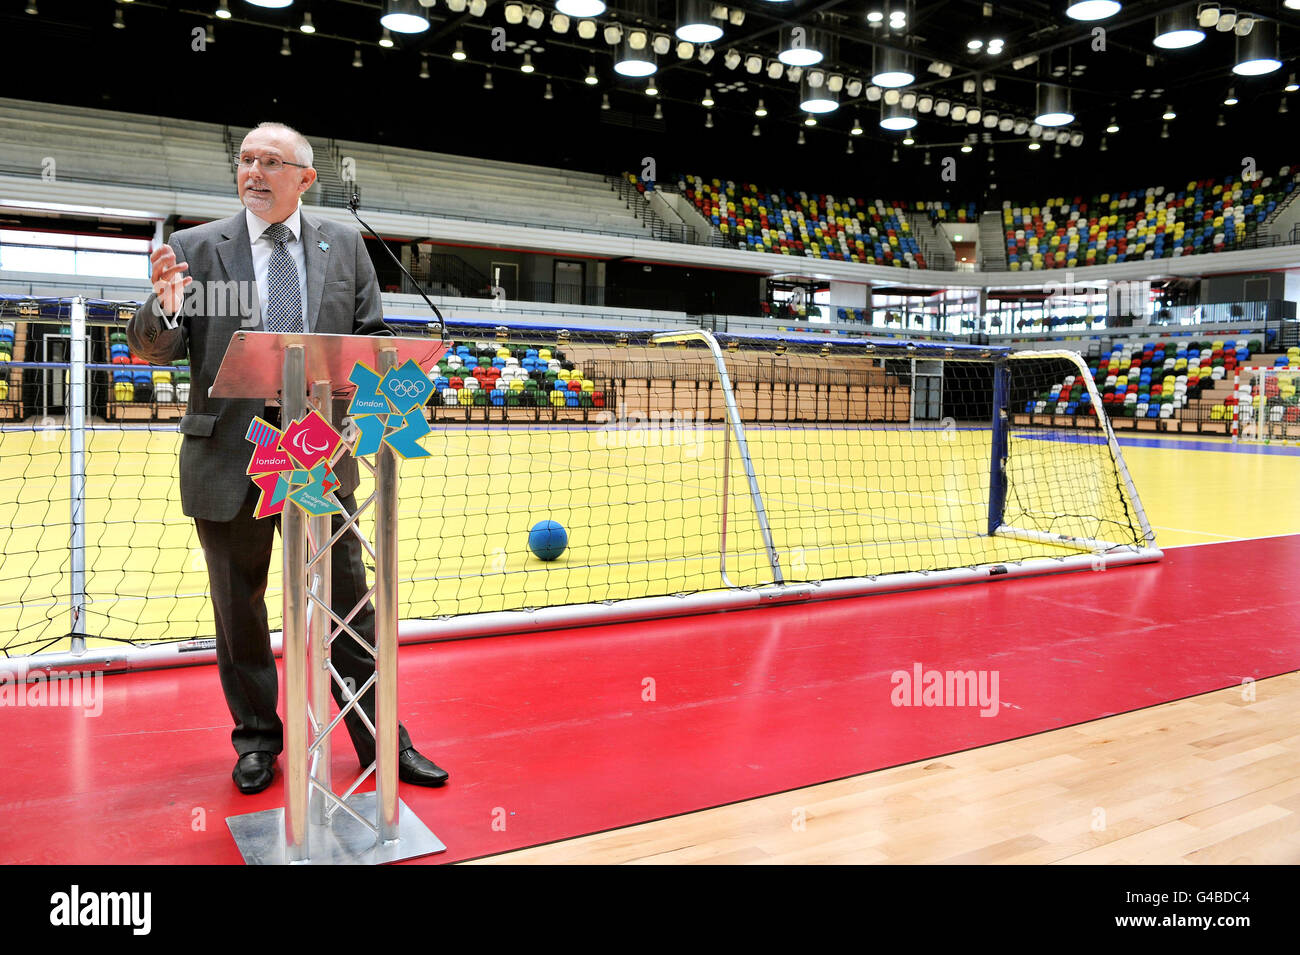 Dennis Hone, chef de la direction de l'ODA, lors de son discours pour ouvrir la nouvelle Handball Arena dans le Parc olympique de Londres. Banque D'Images